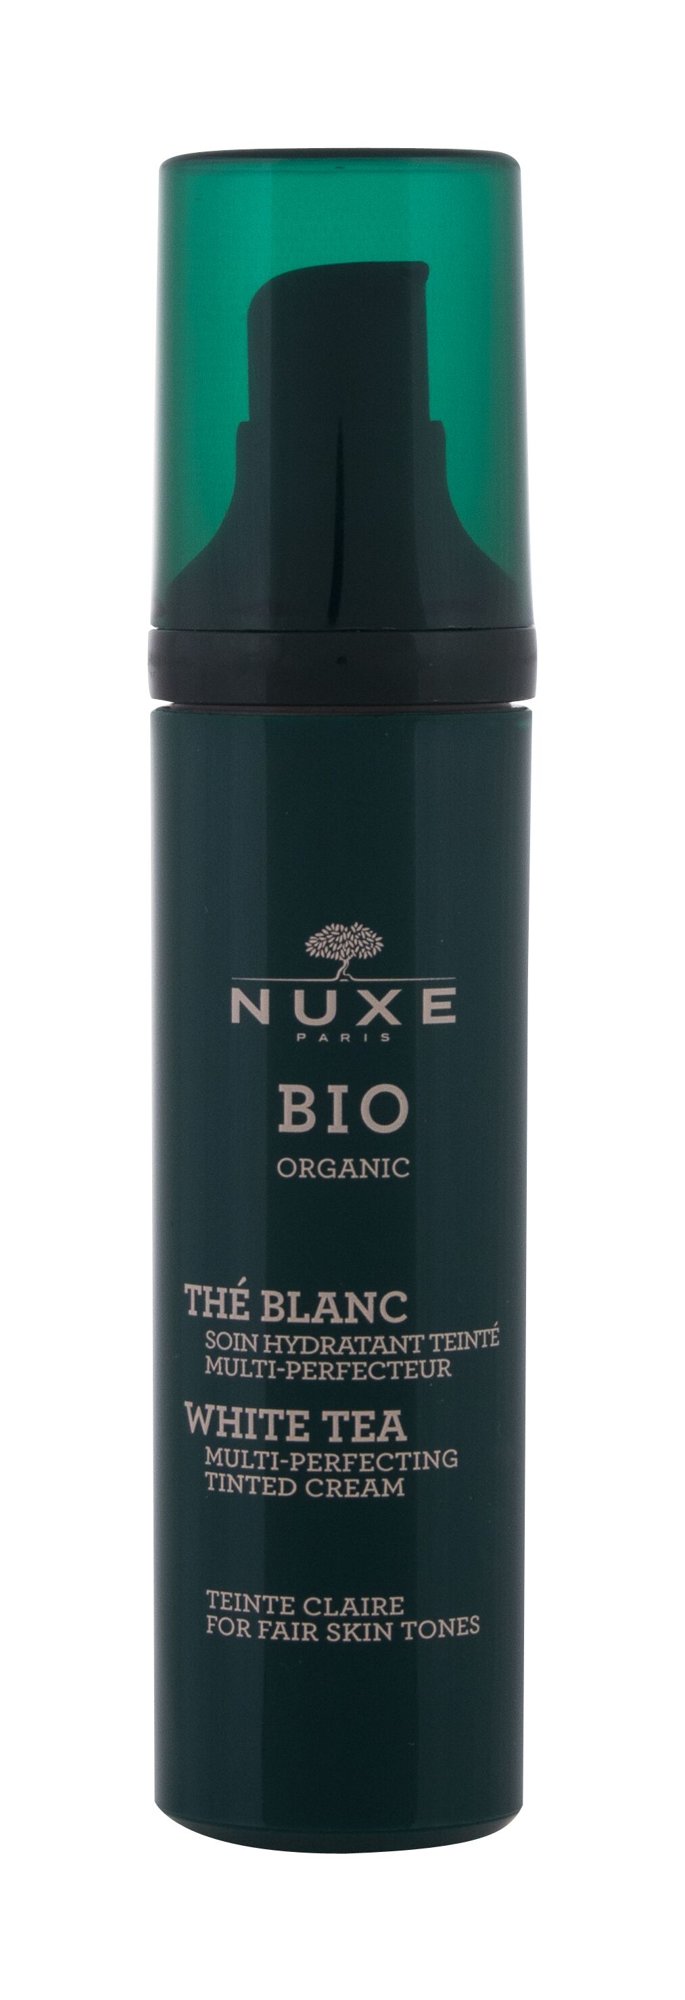 Nuxe Bio Organic White Tea Tinted Cream 50ml dieninis kremas